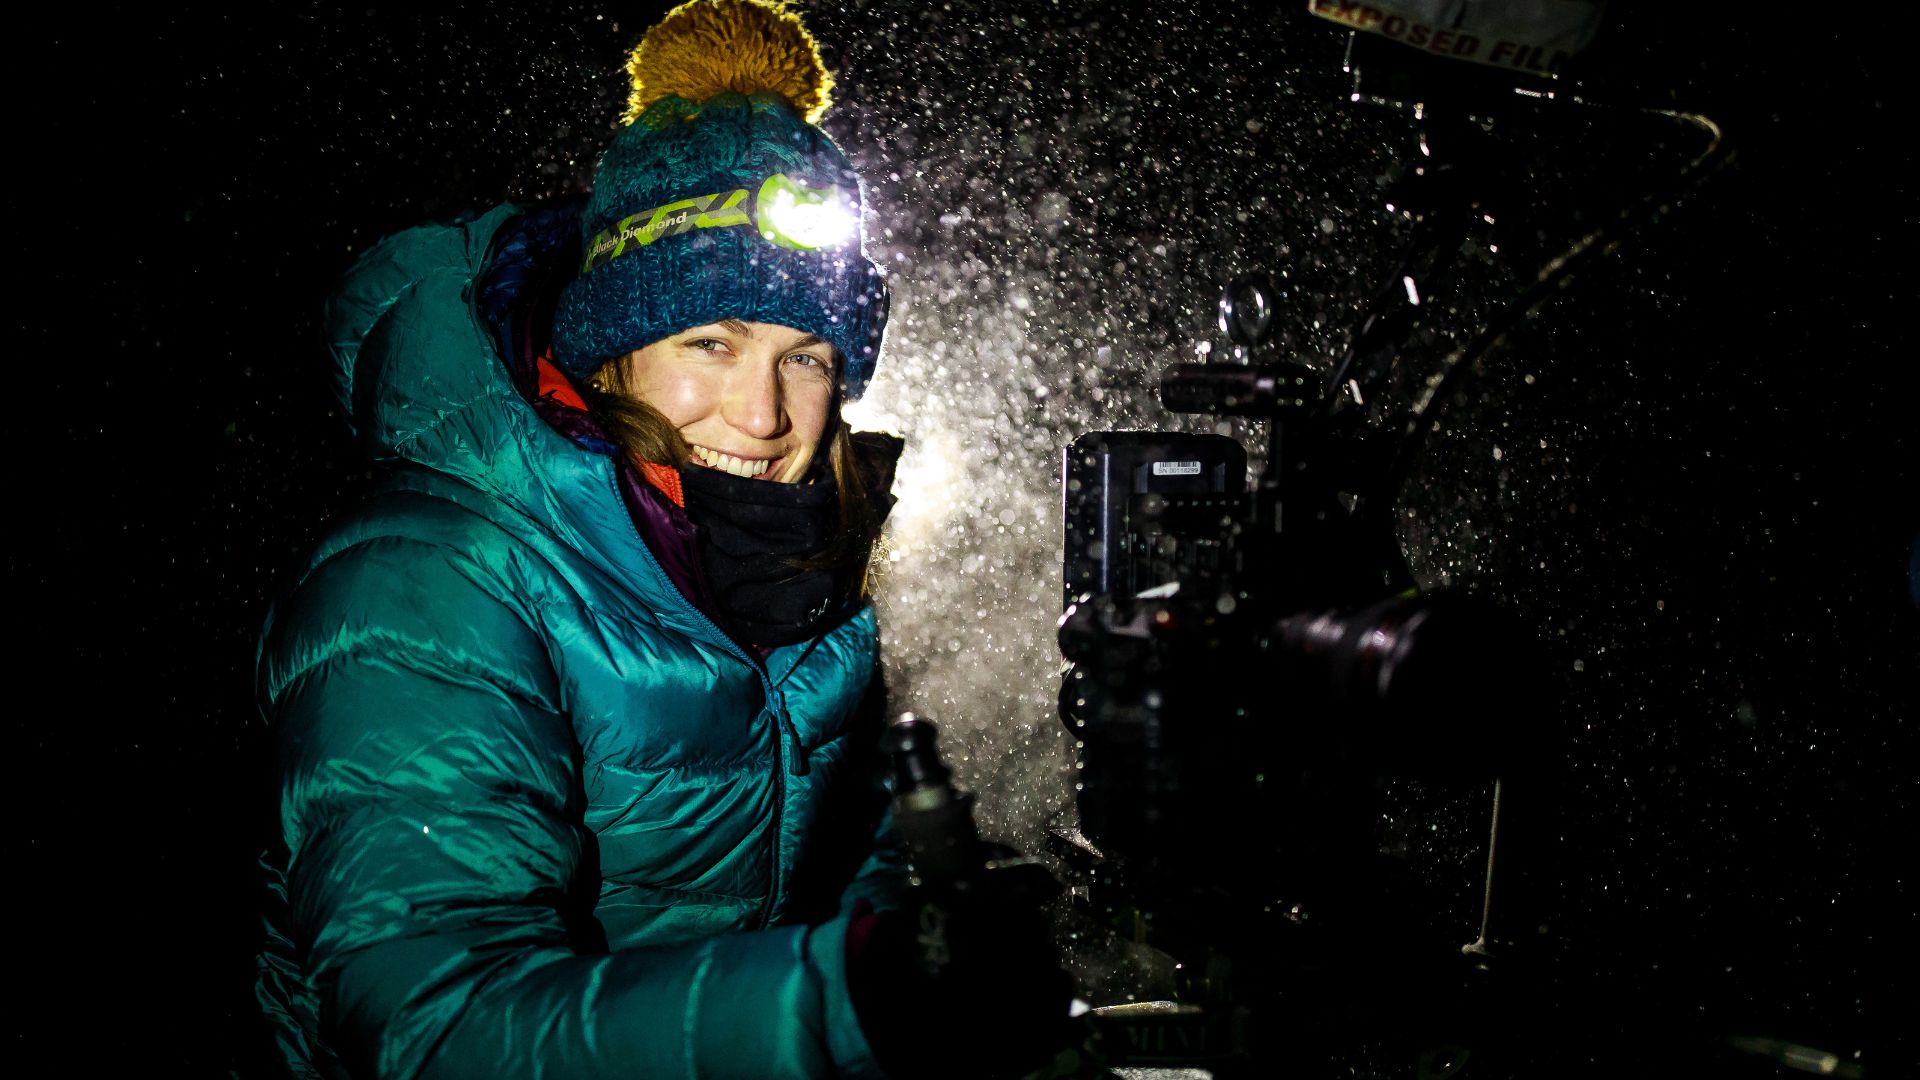 Reżyserka filmu przy kamerze w zimowych, górskich warunkach.